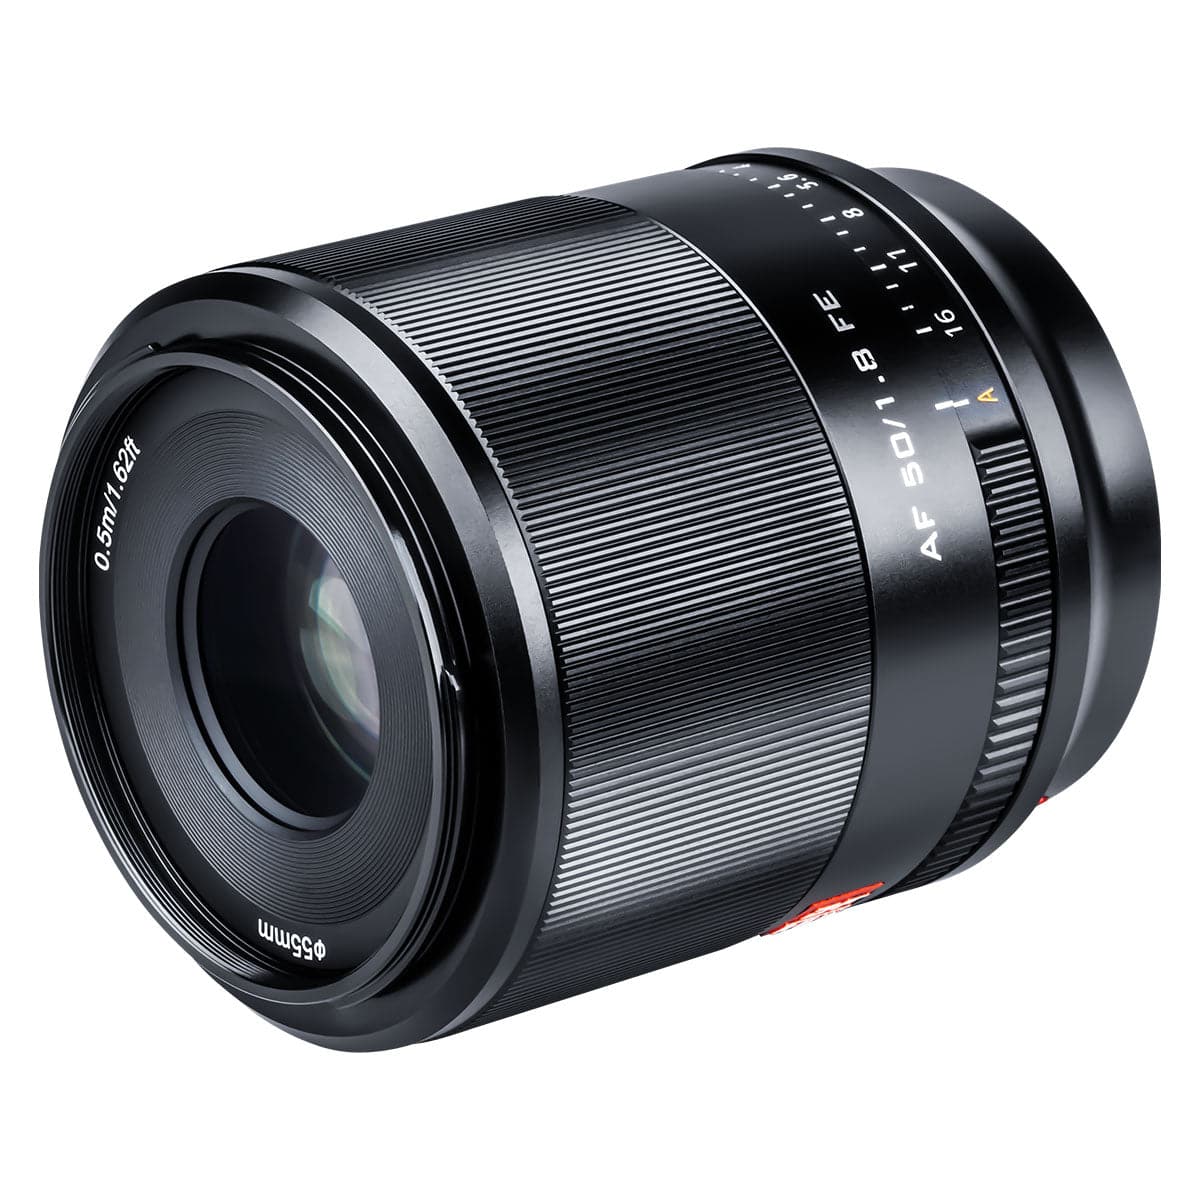 Viltrox 50mmF1.8 FE Mount Auto Focus Full-frame Portrait Prime Lens for Sony E-mount Mirrorless Cameras